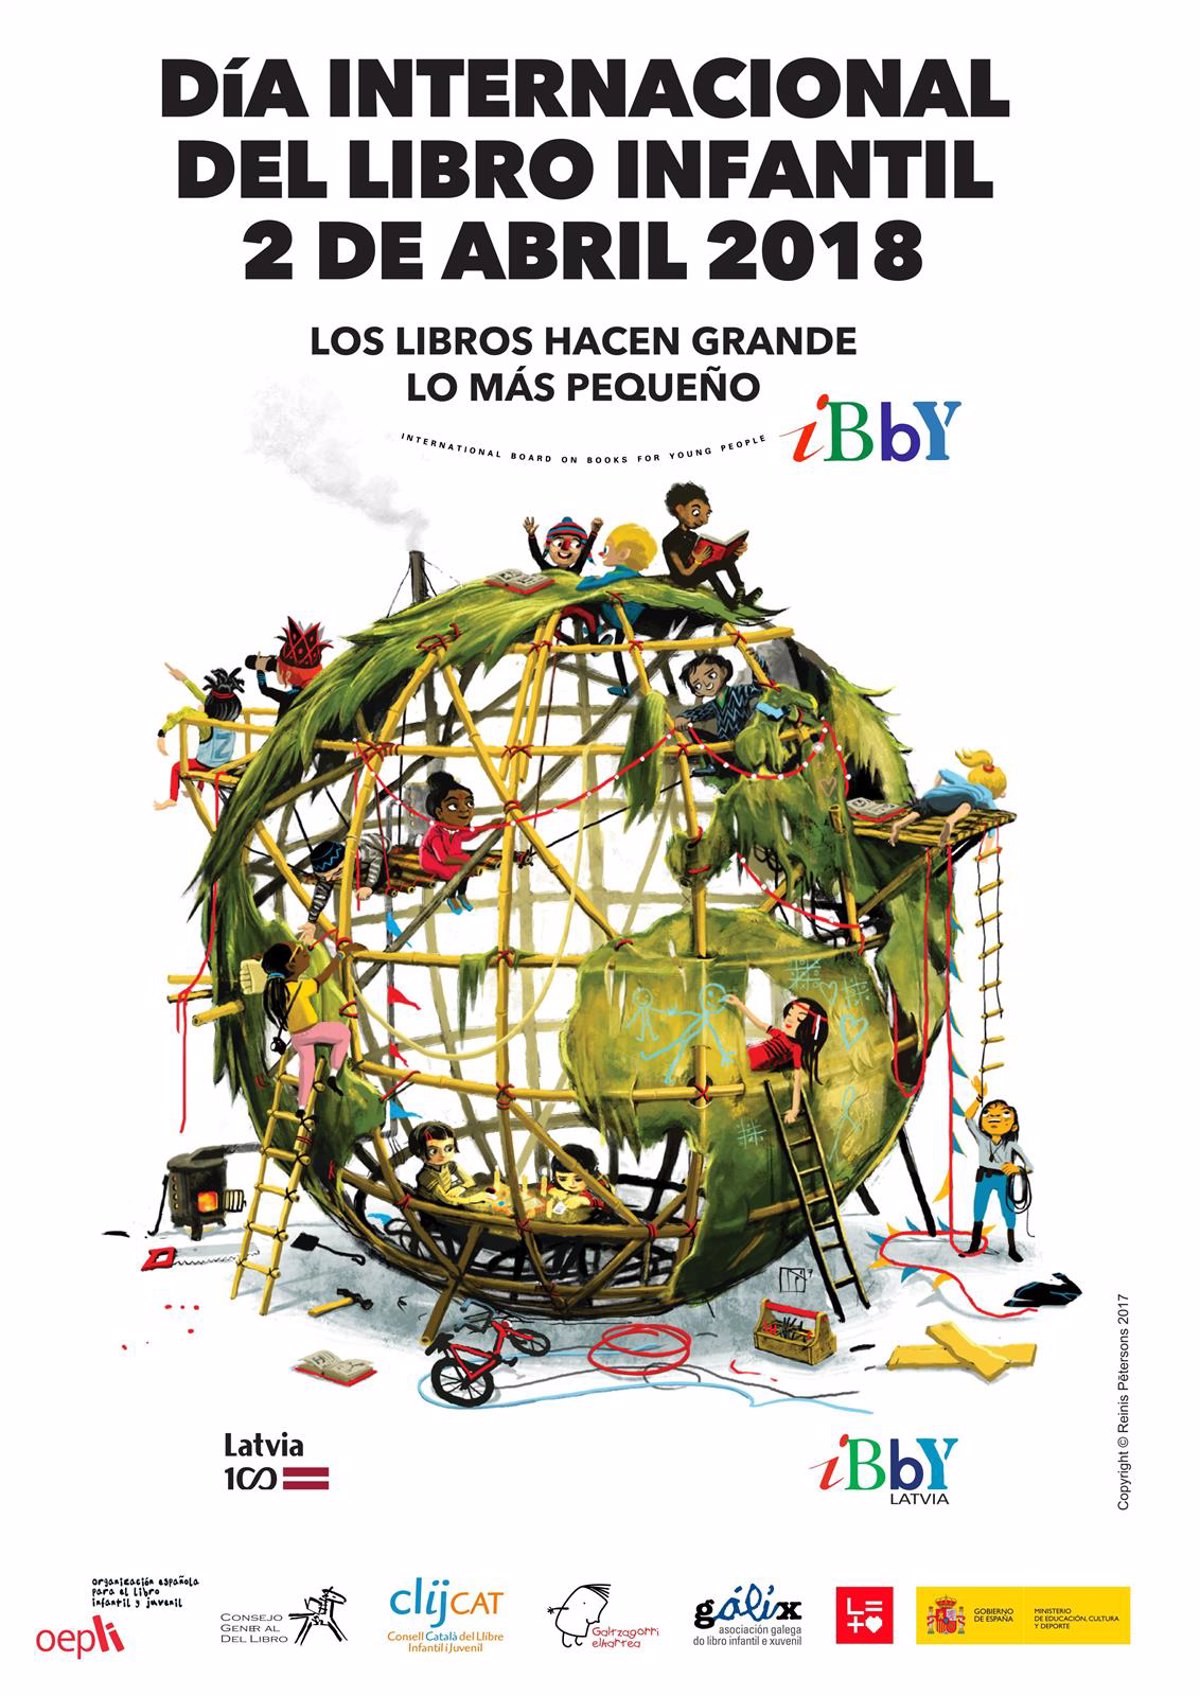 La Consejería de Cultura conmemora el Día del Libro Infantil